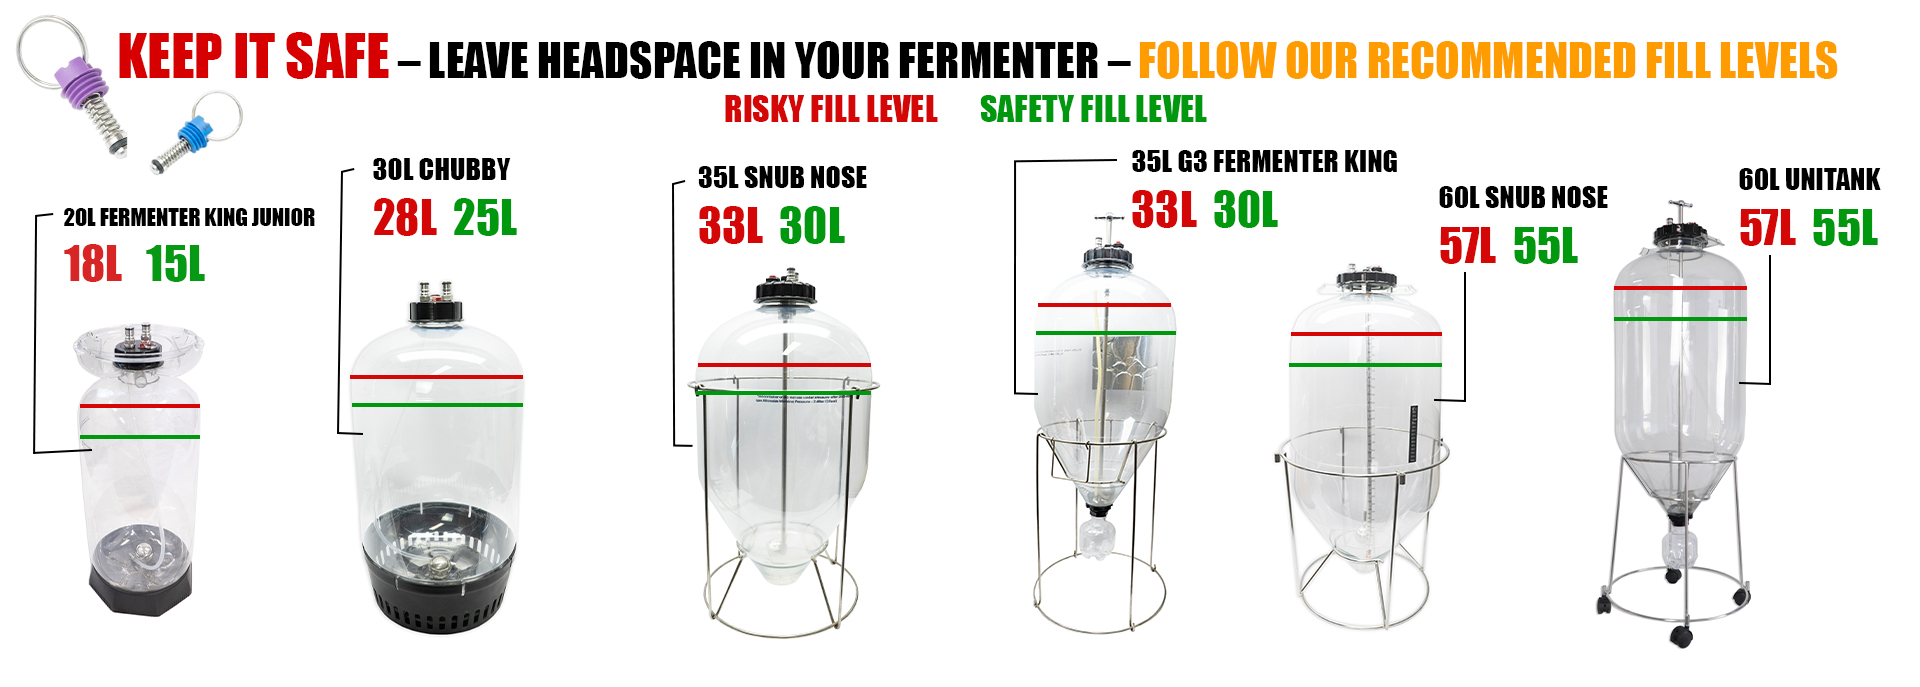 Kegking Fermentasaraus Snub Nose All Round Fermenter Kit G3 Pressurized Fermente